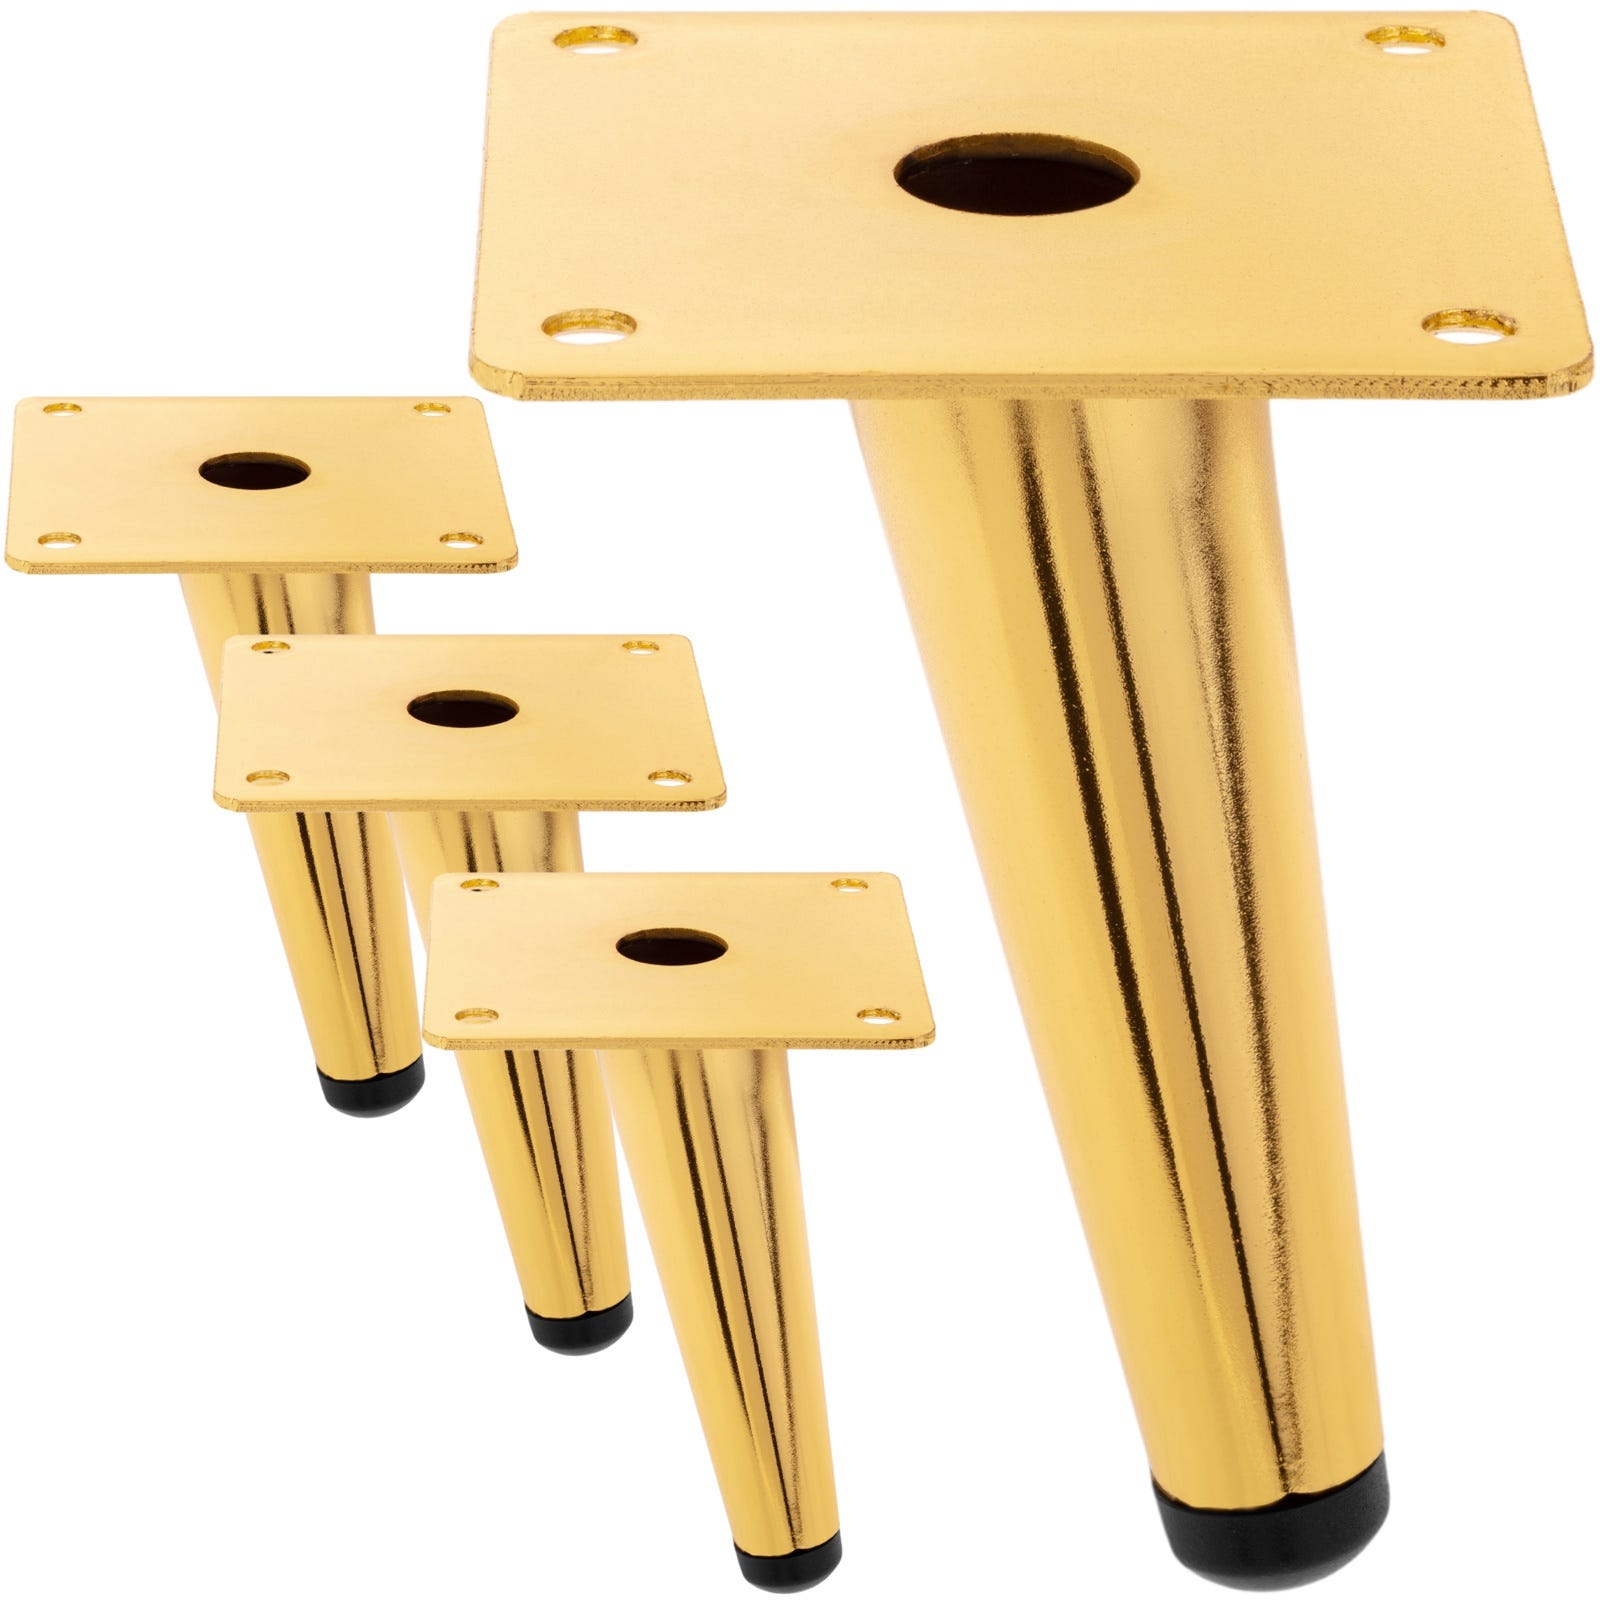 Pack de 4 patas cónicas inclinadas de repuesto para muebles 15 cm dorado